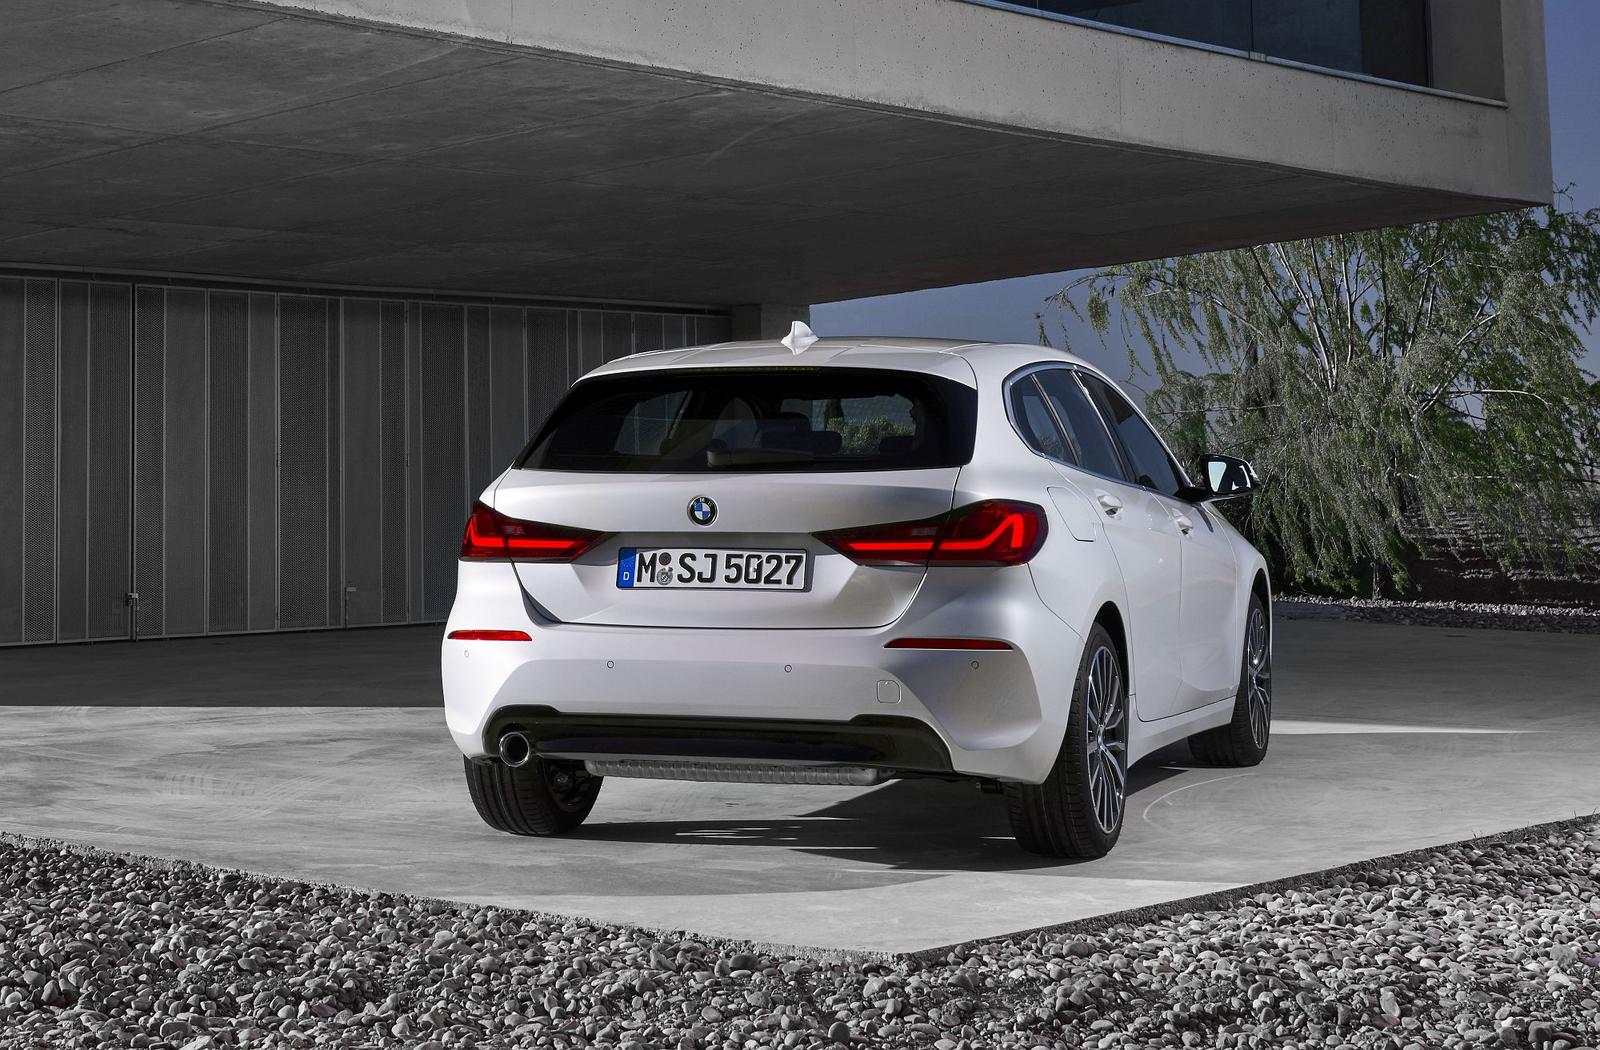 BMW Série 1 2019 oficiais _(50)